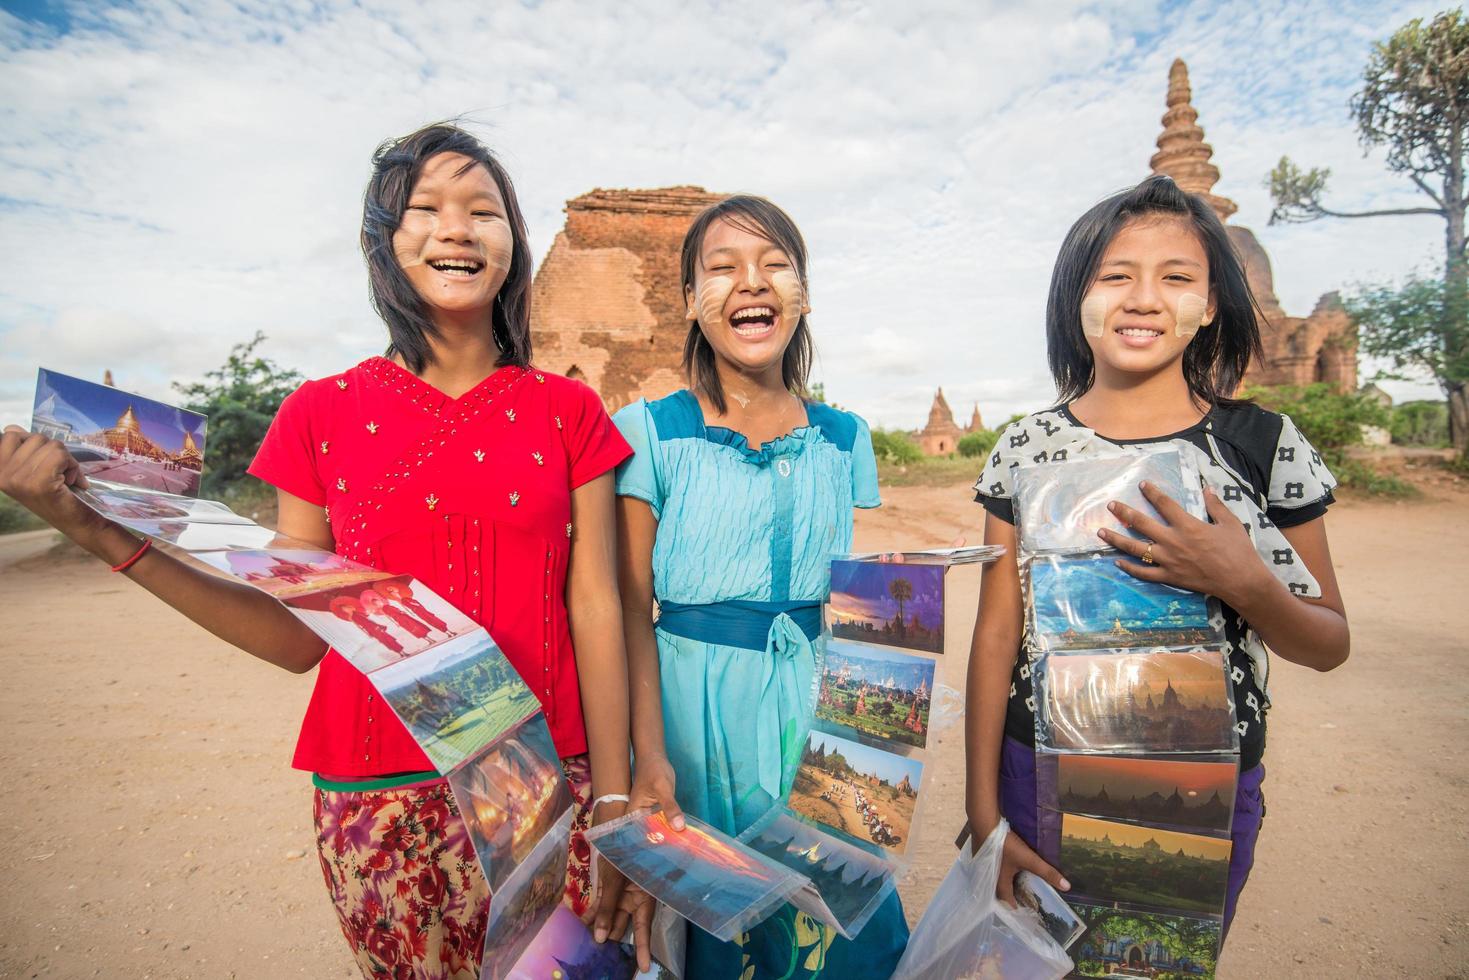 bagan, myanmar - 11 ottobre 2014 - una ragazza non identificata vende una cartolina nella vecchia zona archeologica di bagan. foto